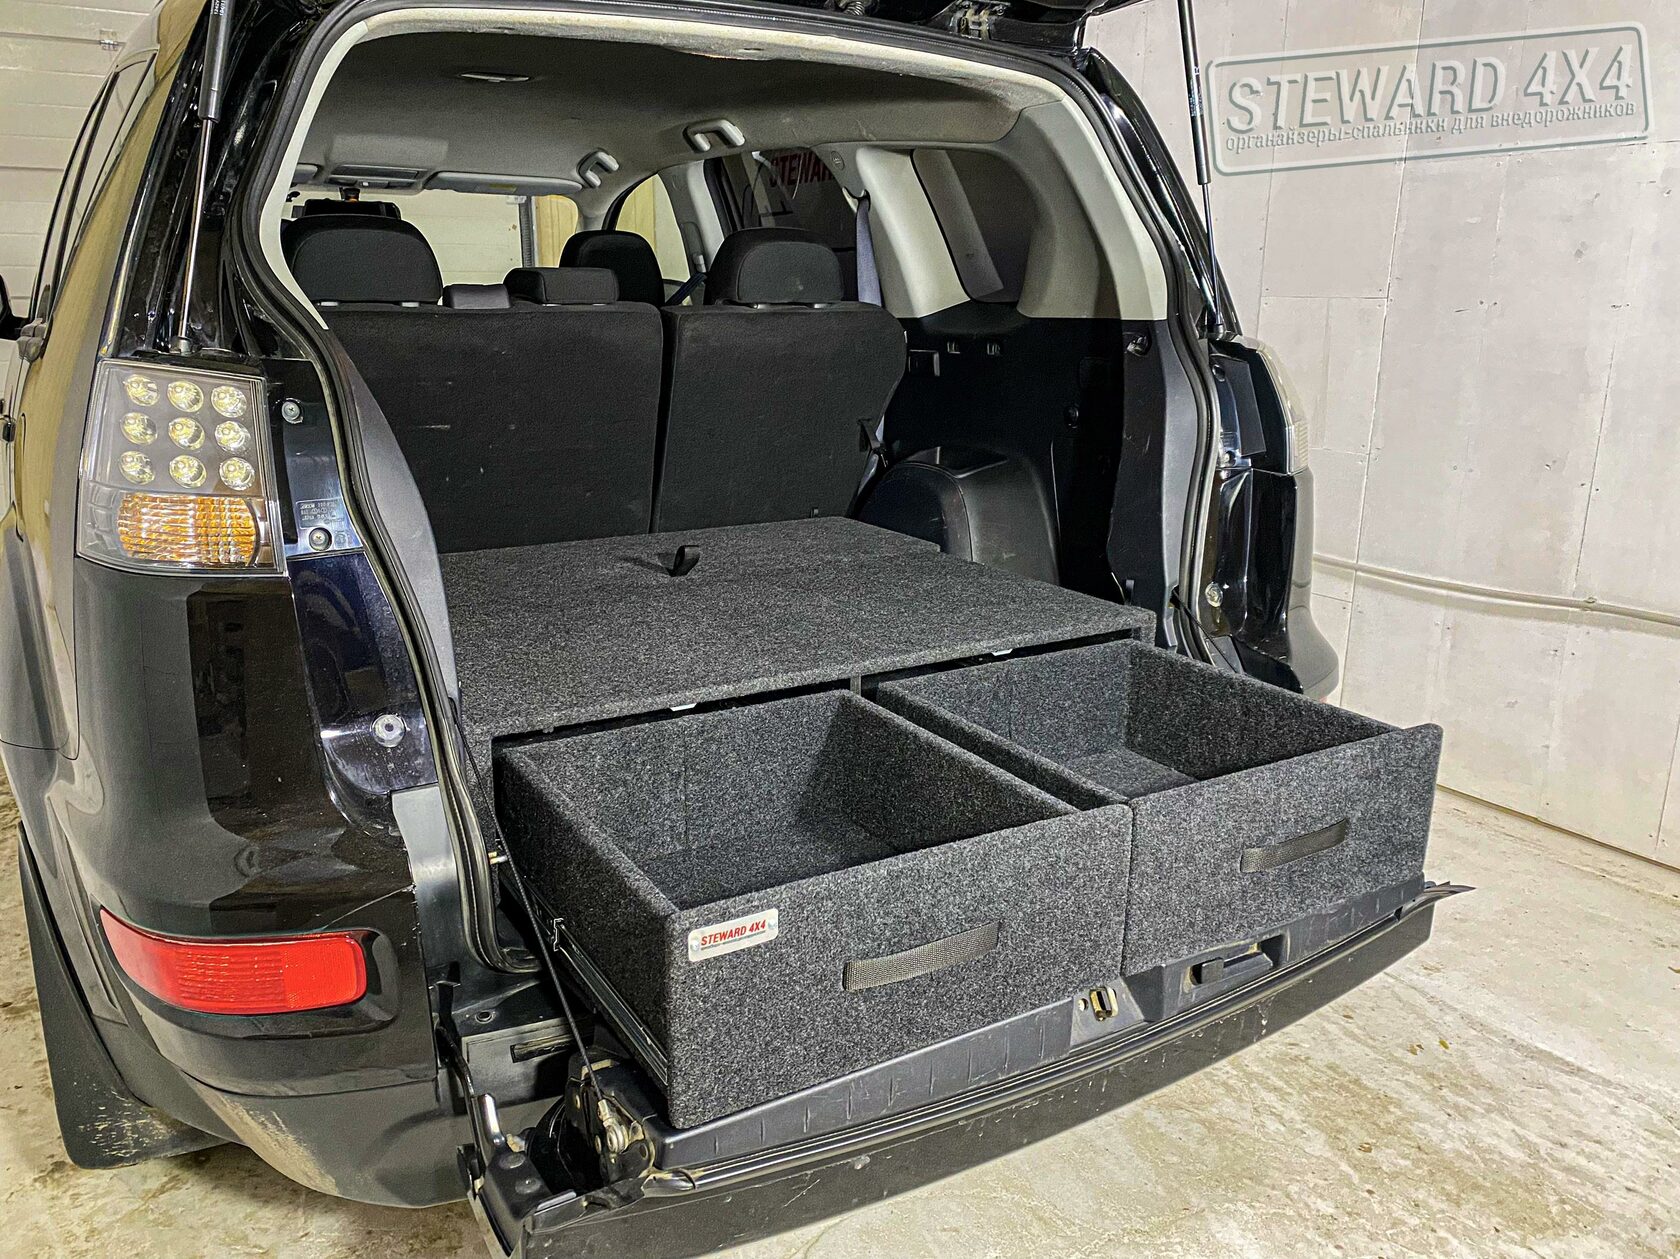 Органайзеры - спальники в багажник внедорожников Mitsubishi Outlander 3